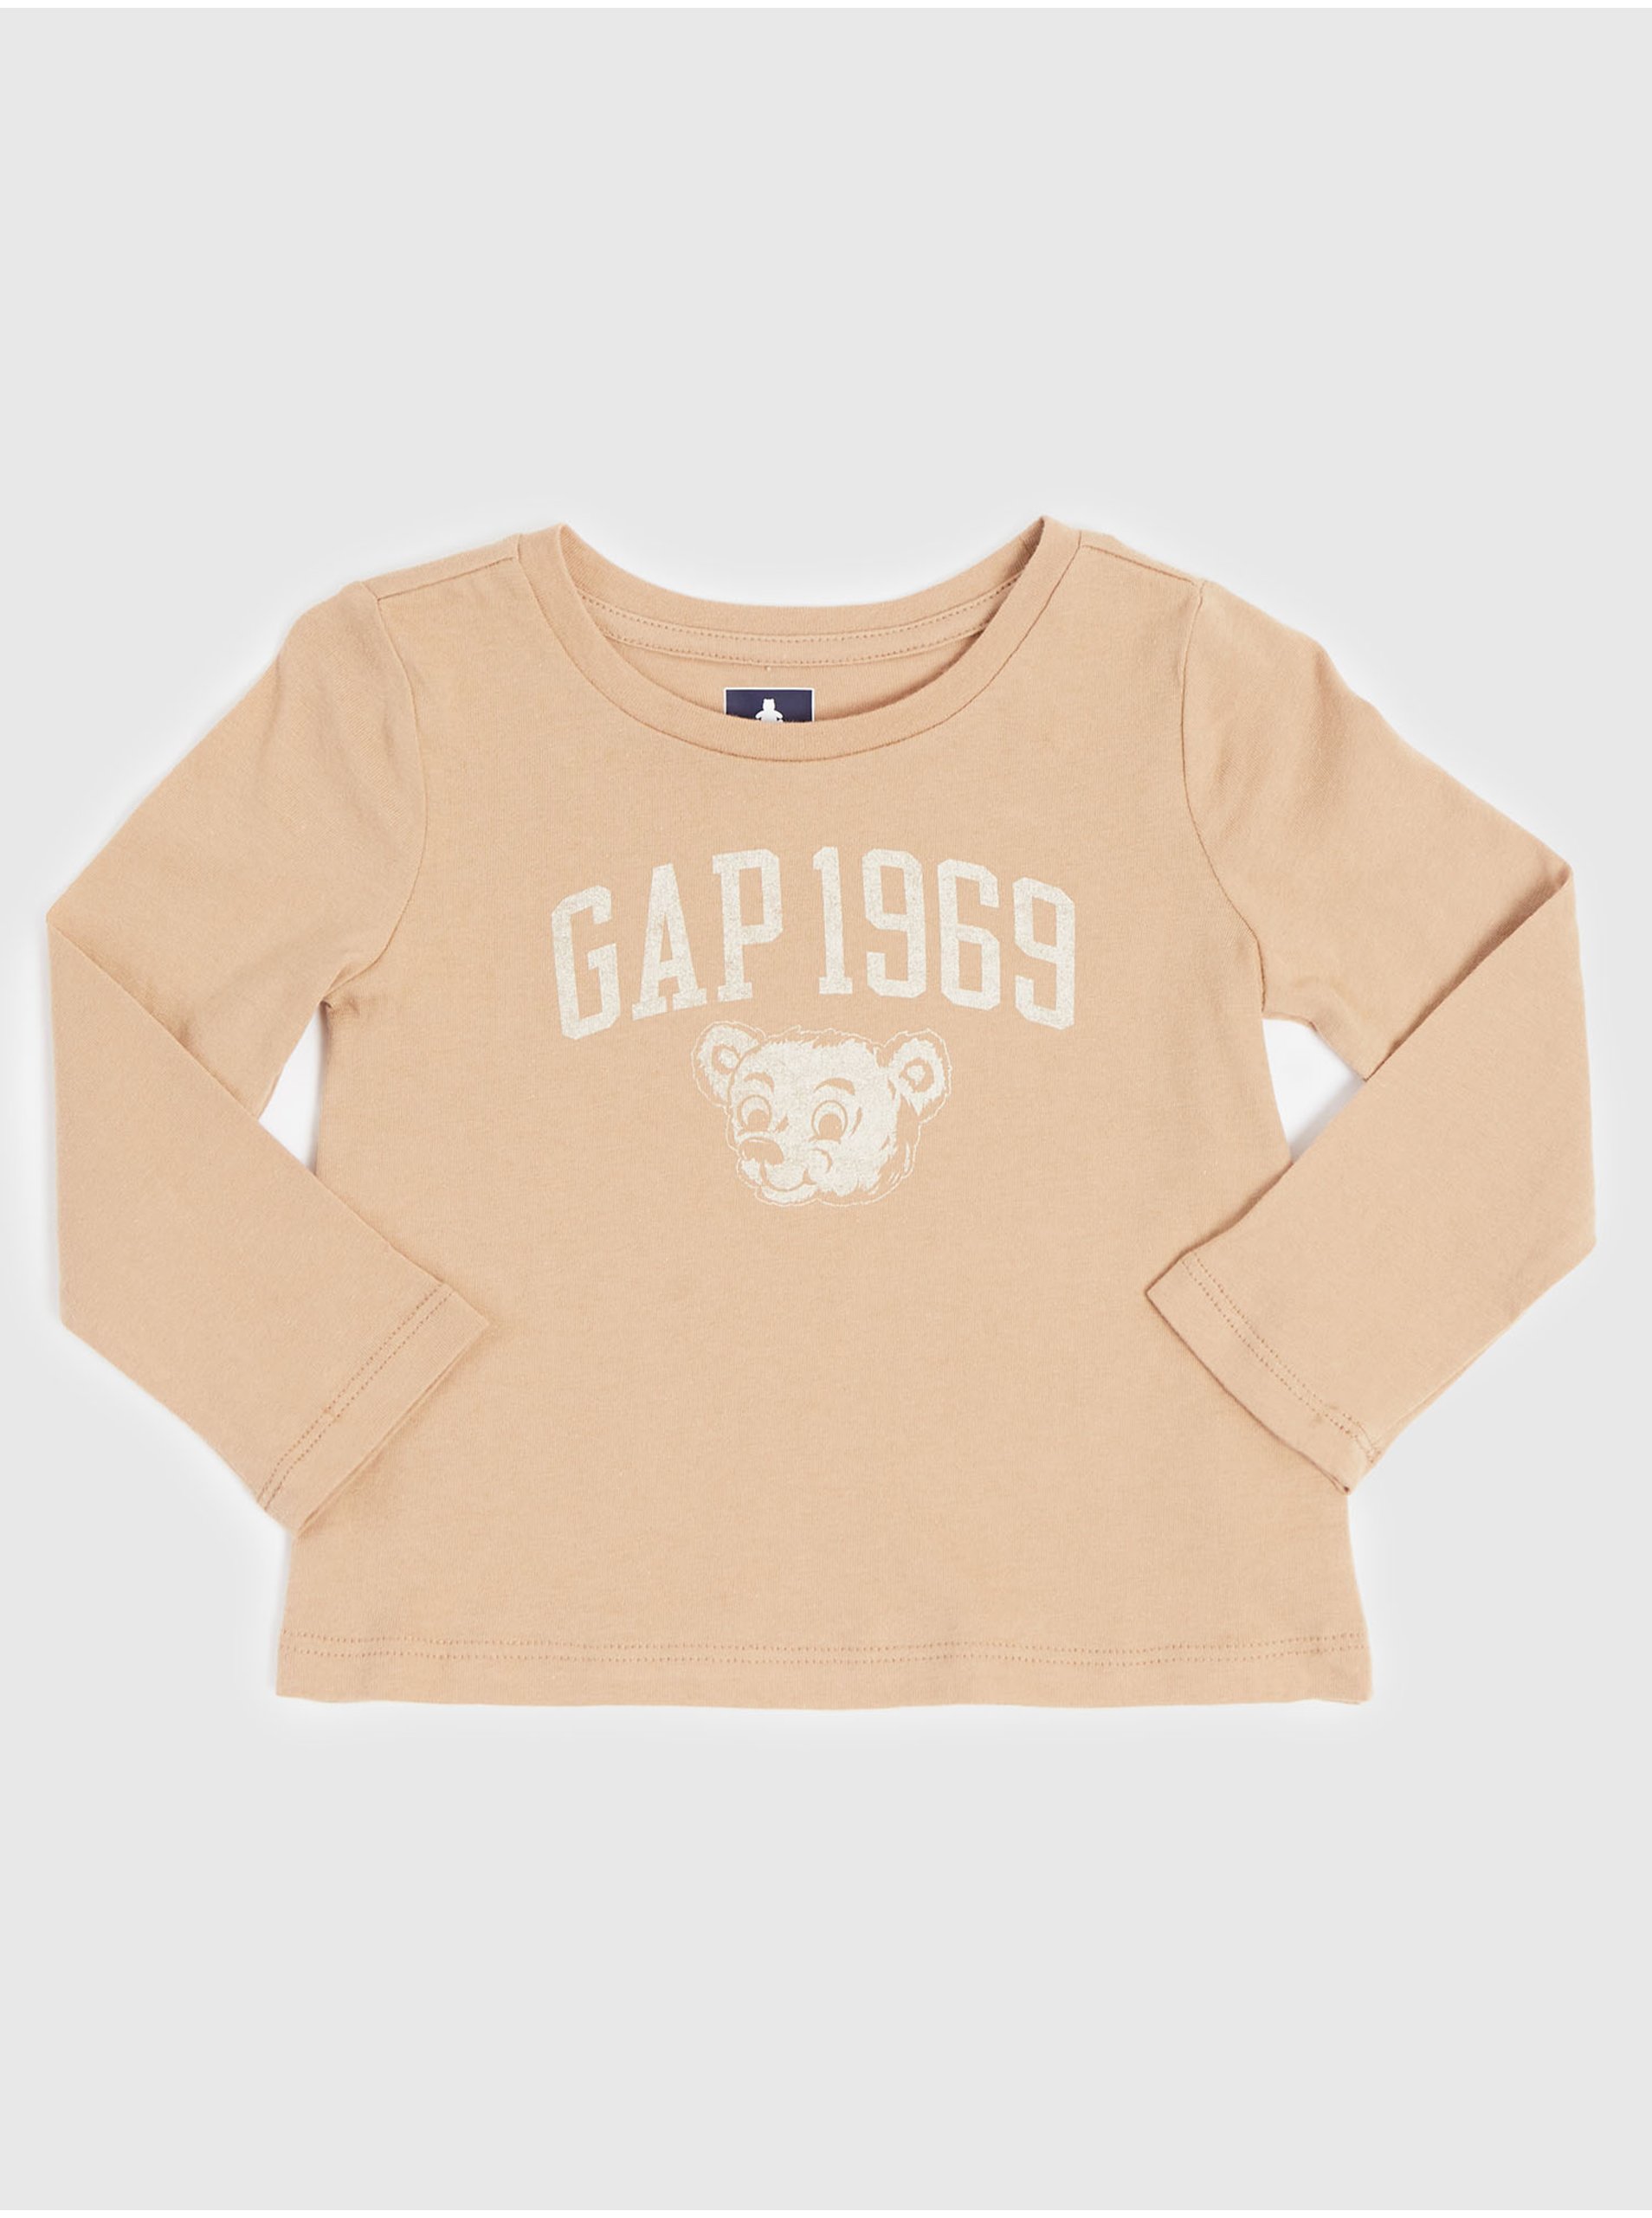 Lacno Béžové dievčenské tričko GAP 1969